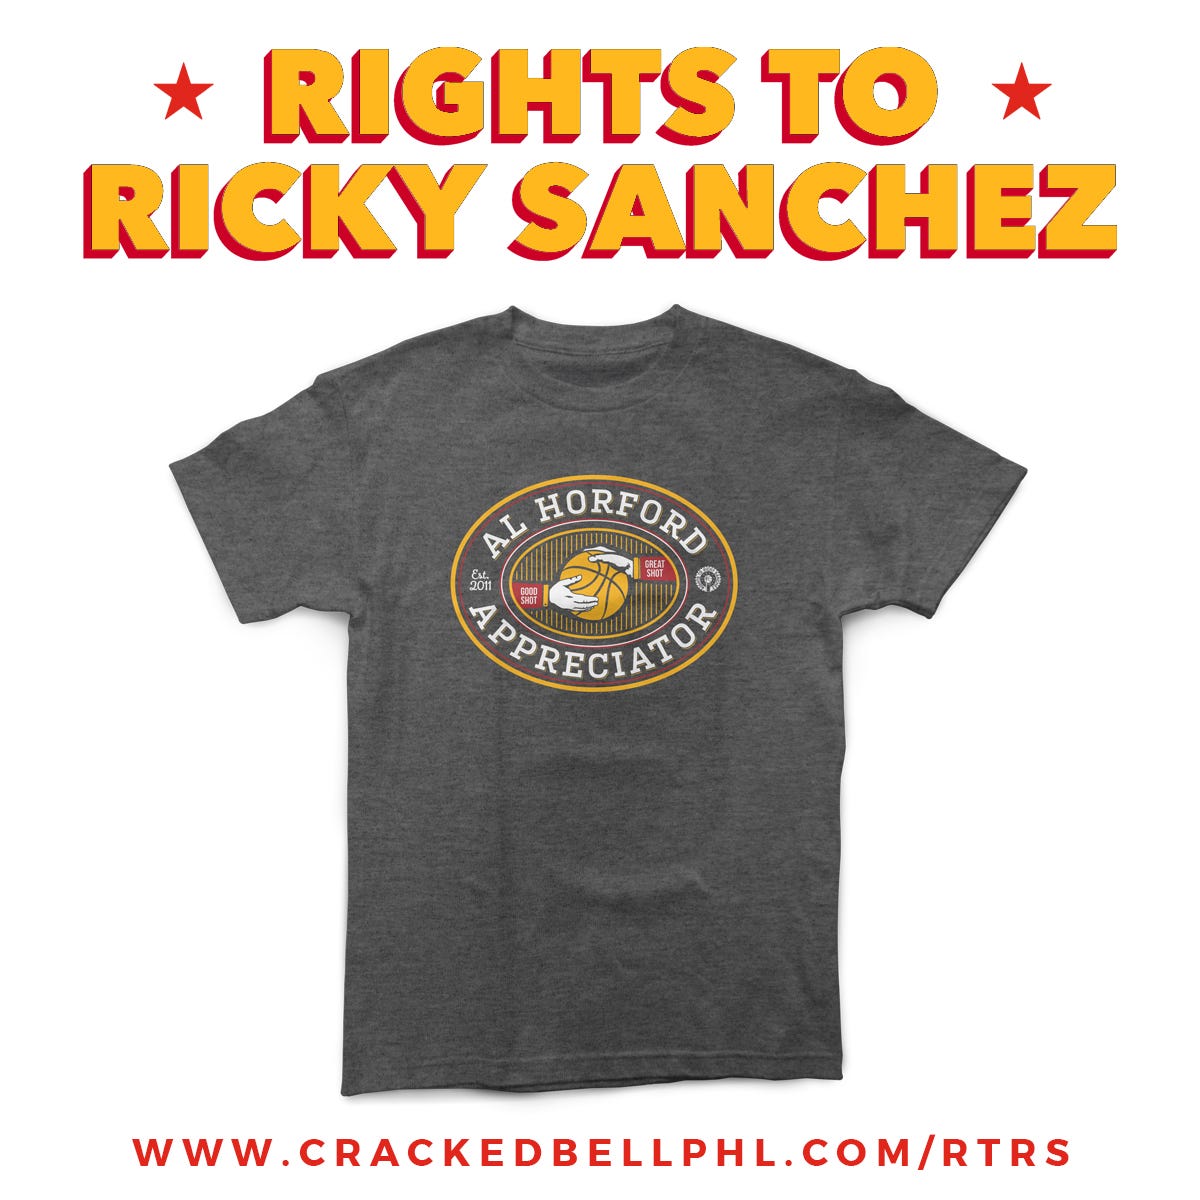 2019-7-9-RIGHTS-TO-RICKY-SANCHEZ-SPLASH.jpg